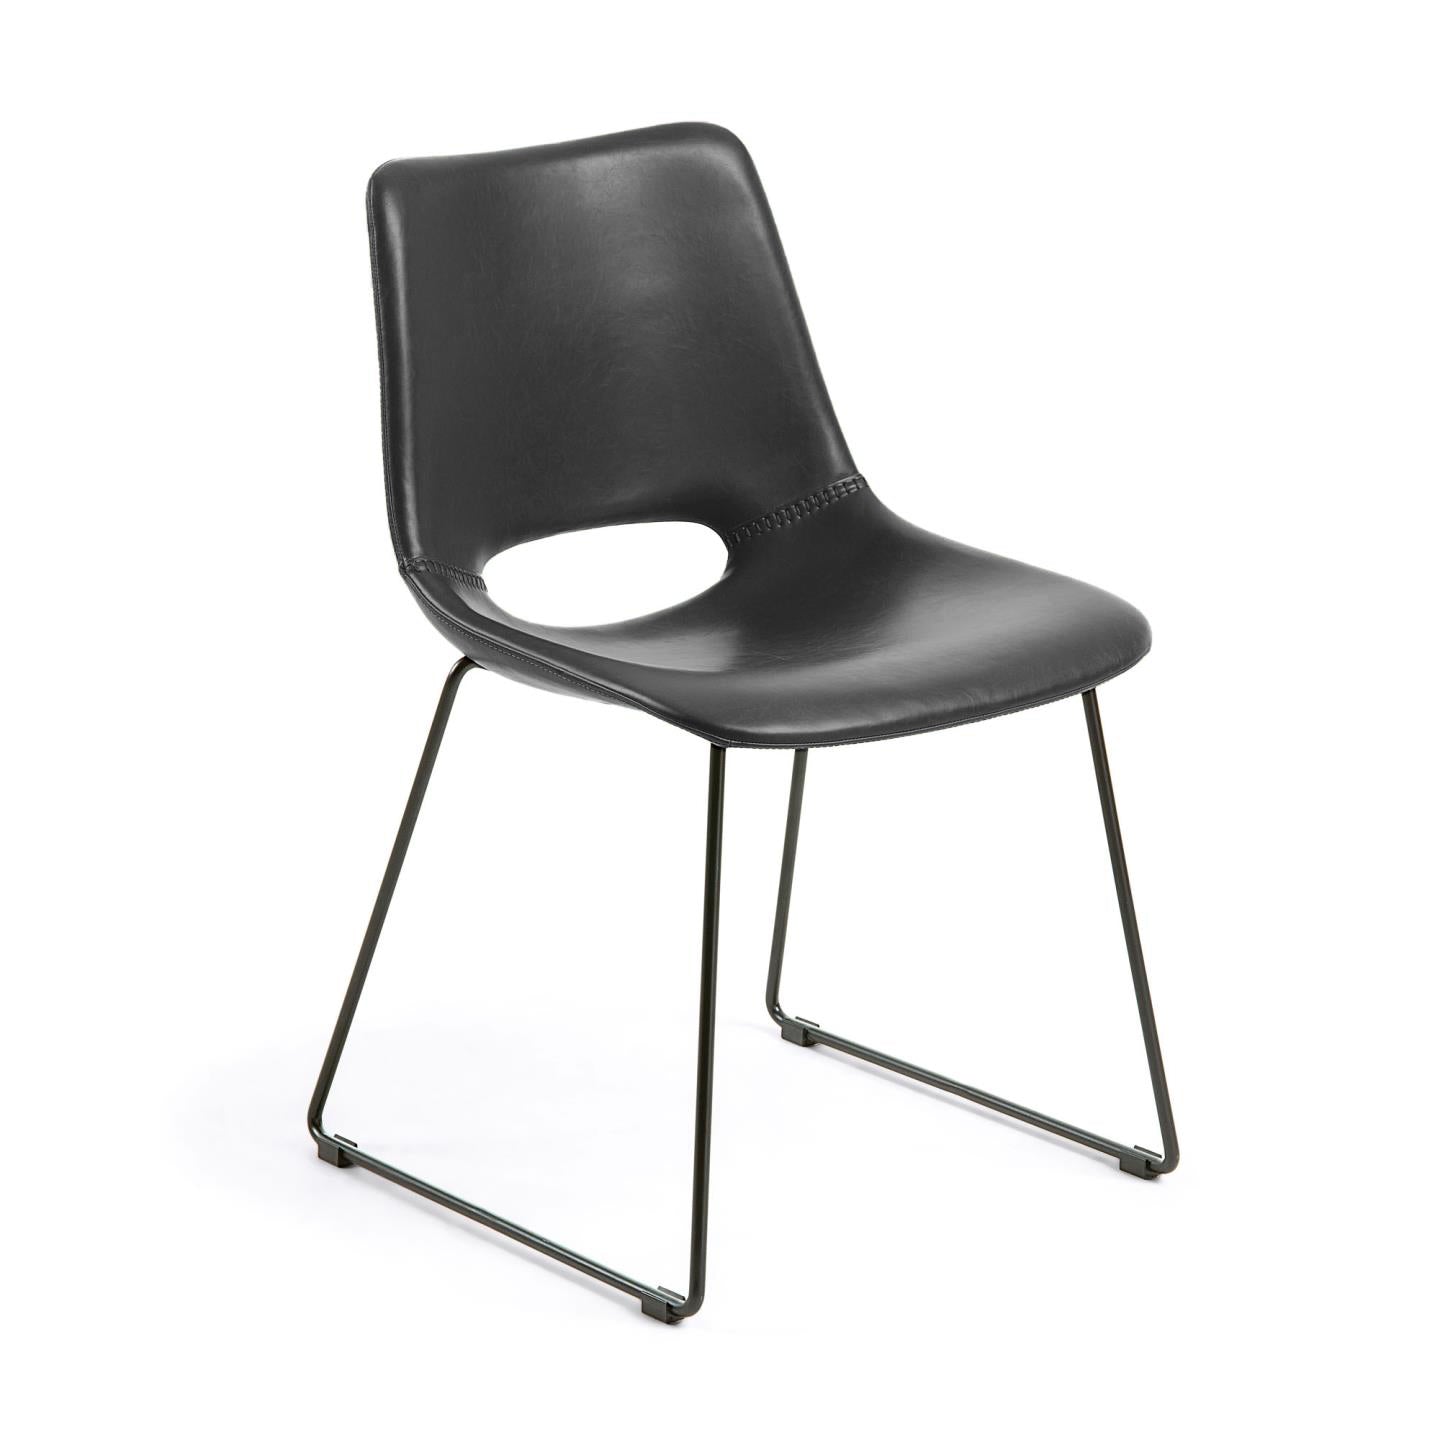 Zahara fekete szék acél lábakkal, fekete kivitelben